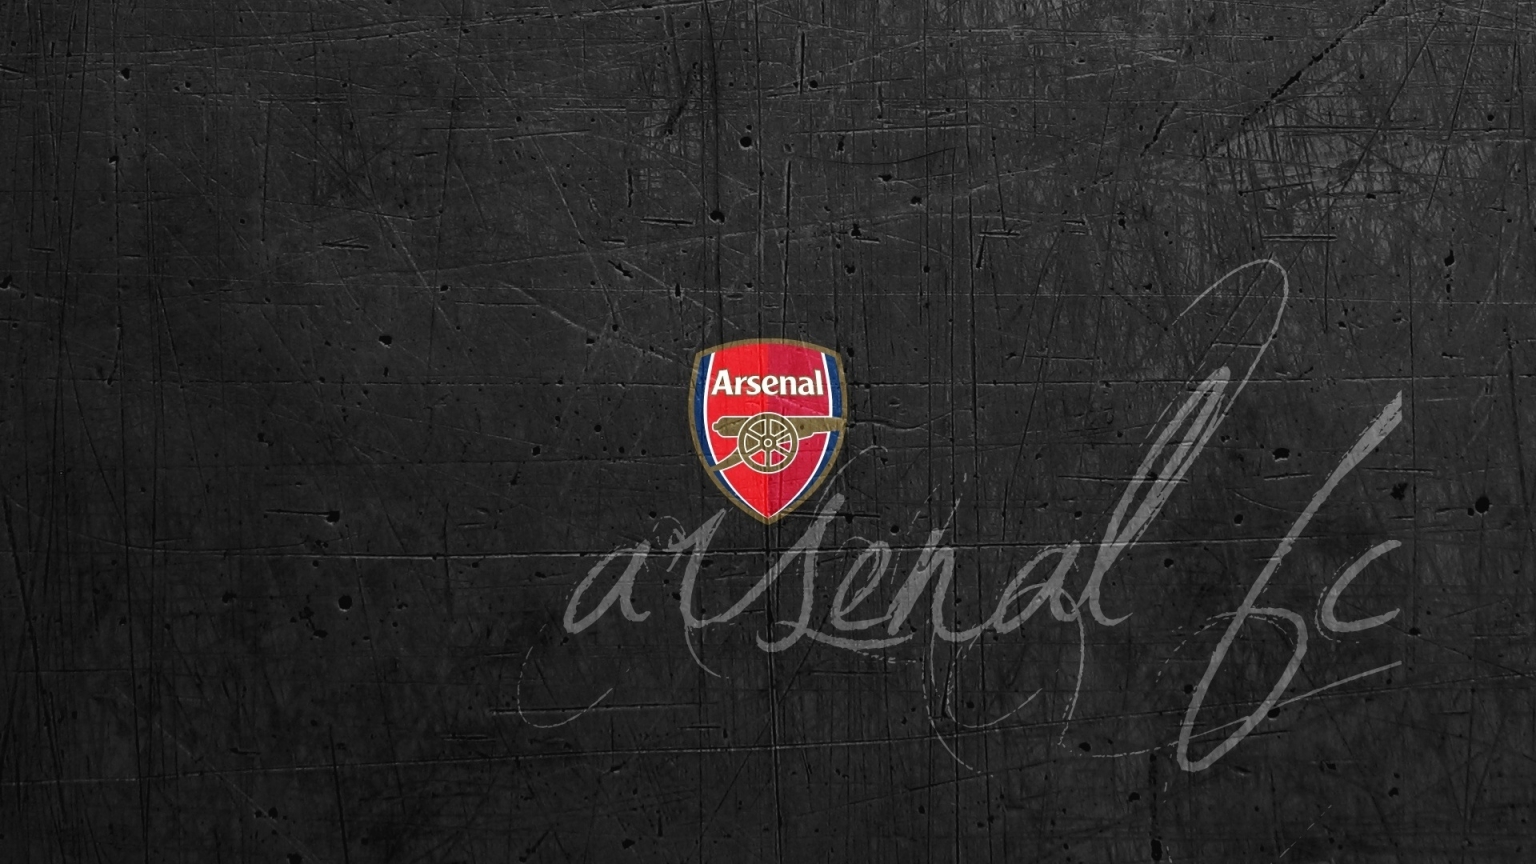 Arsenal London Logo for 1536 x 864 HDTV resolution